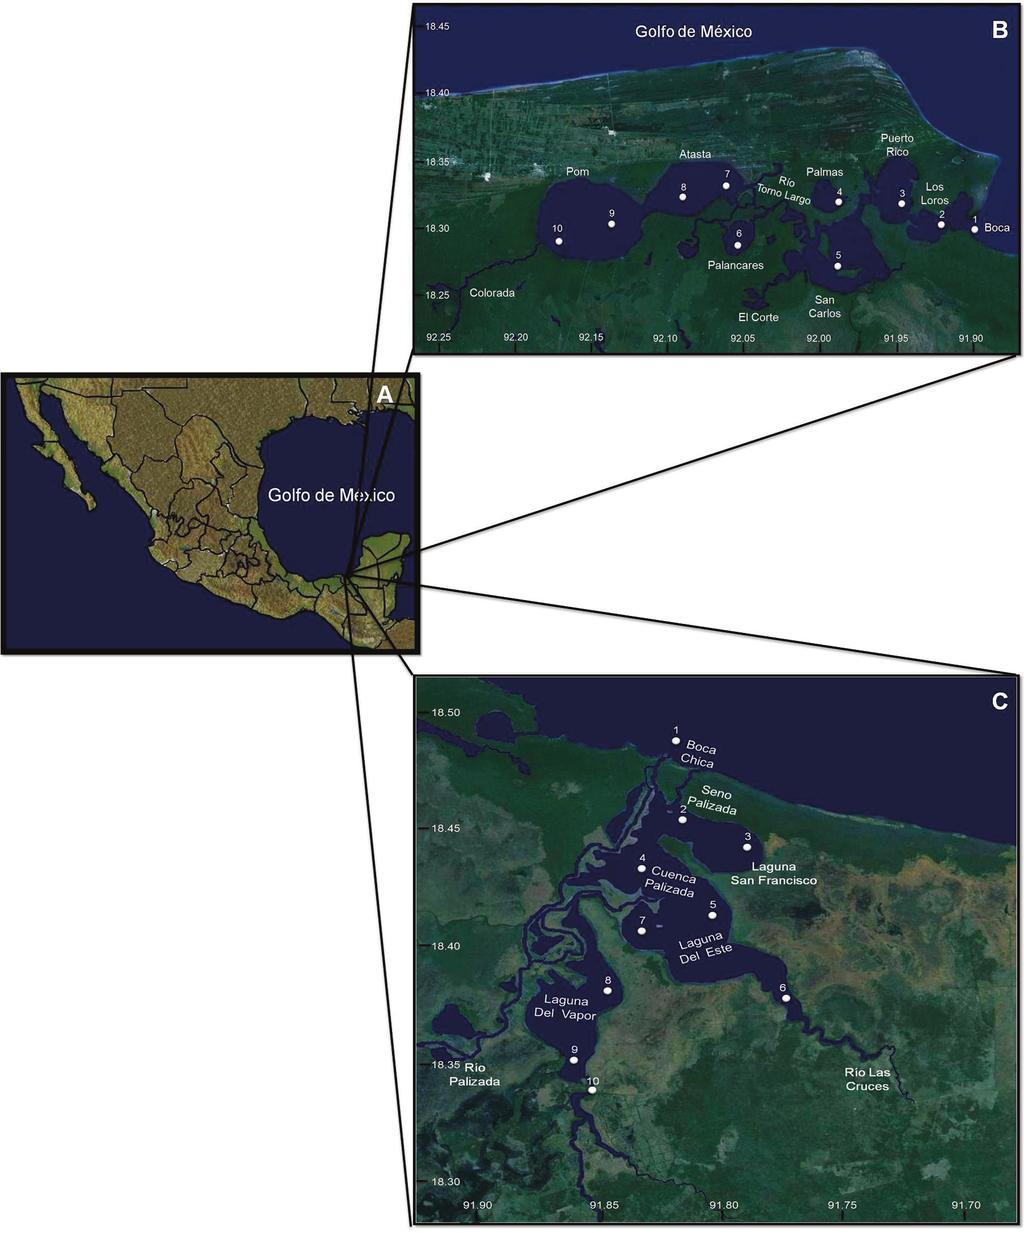 Composición fitoplanctónica en los sistemas fluvio-lagunares pom-atasta y palizada del este, adyacentes a la laguna de Términos Campeche, México Figura 1.